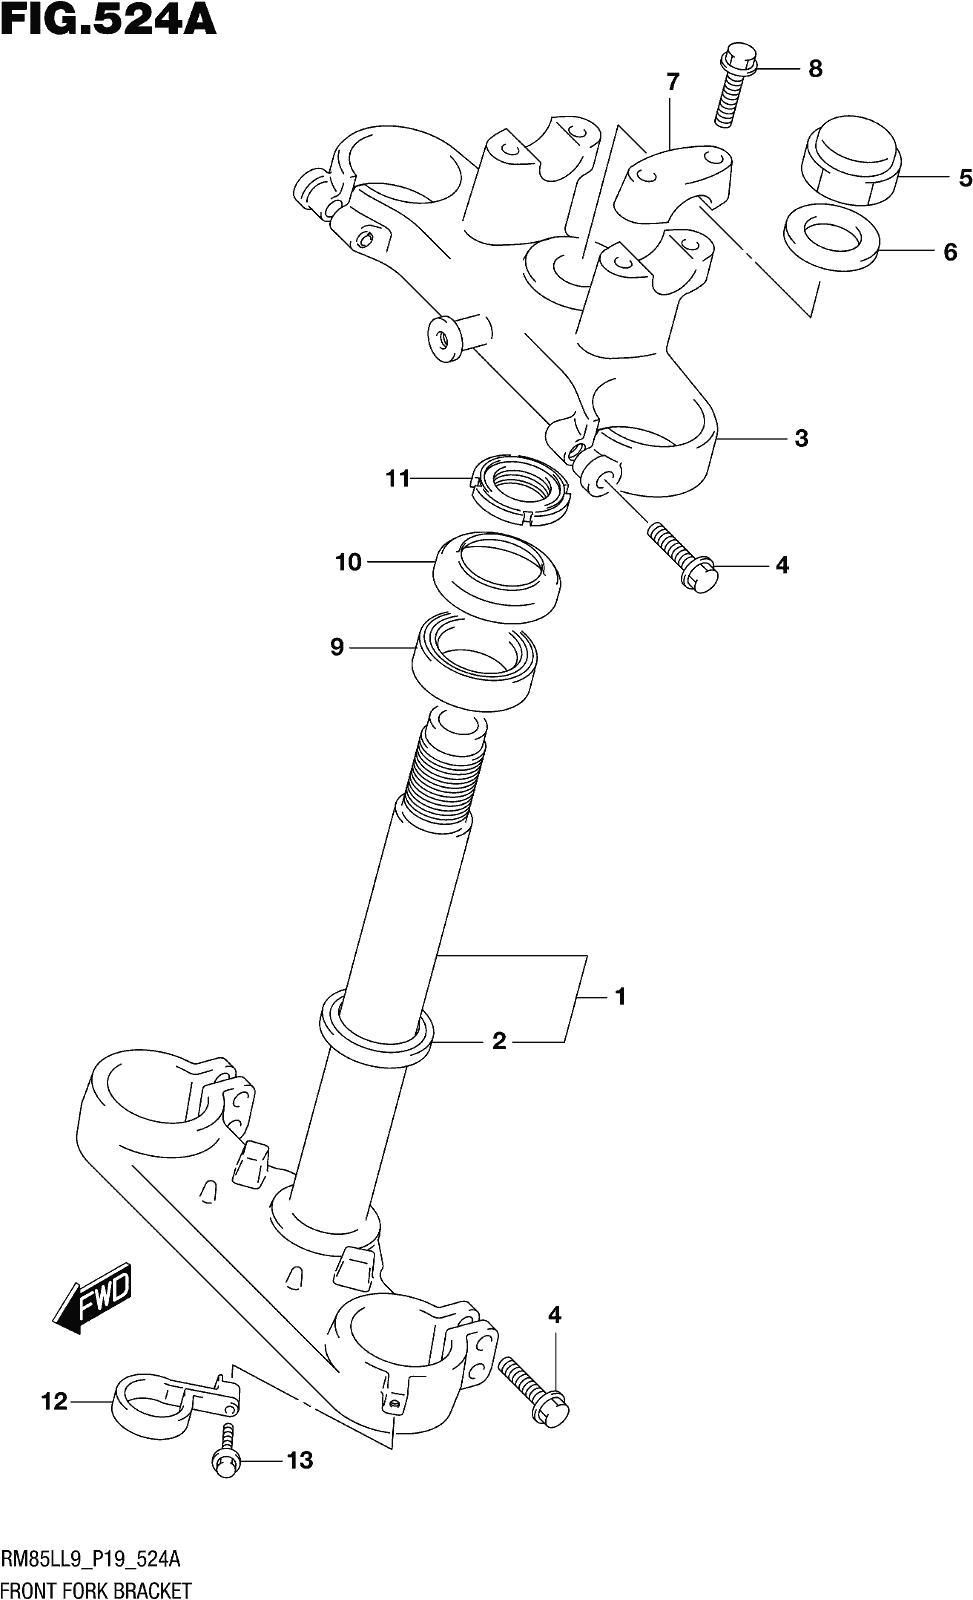 Fig.524a Stem, Steering